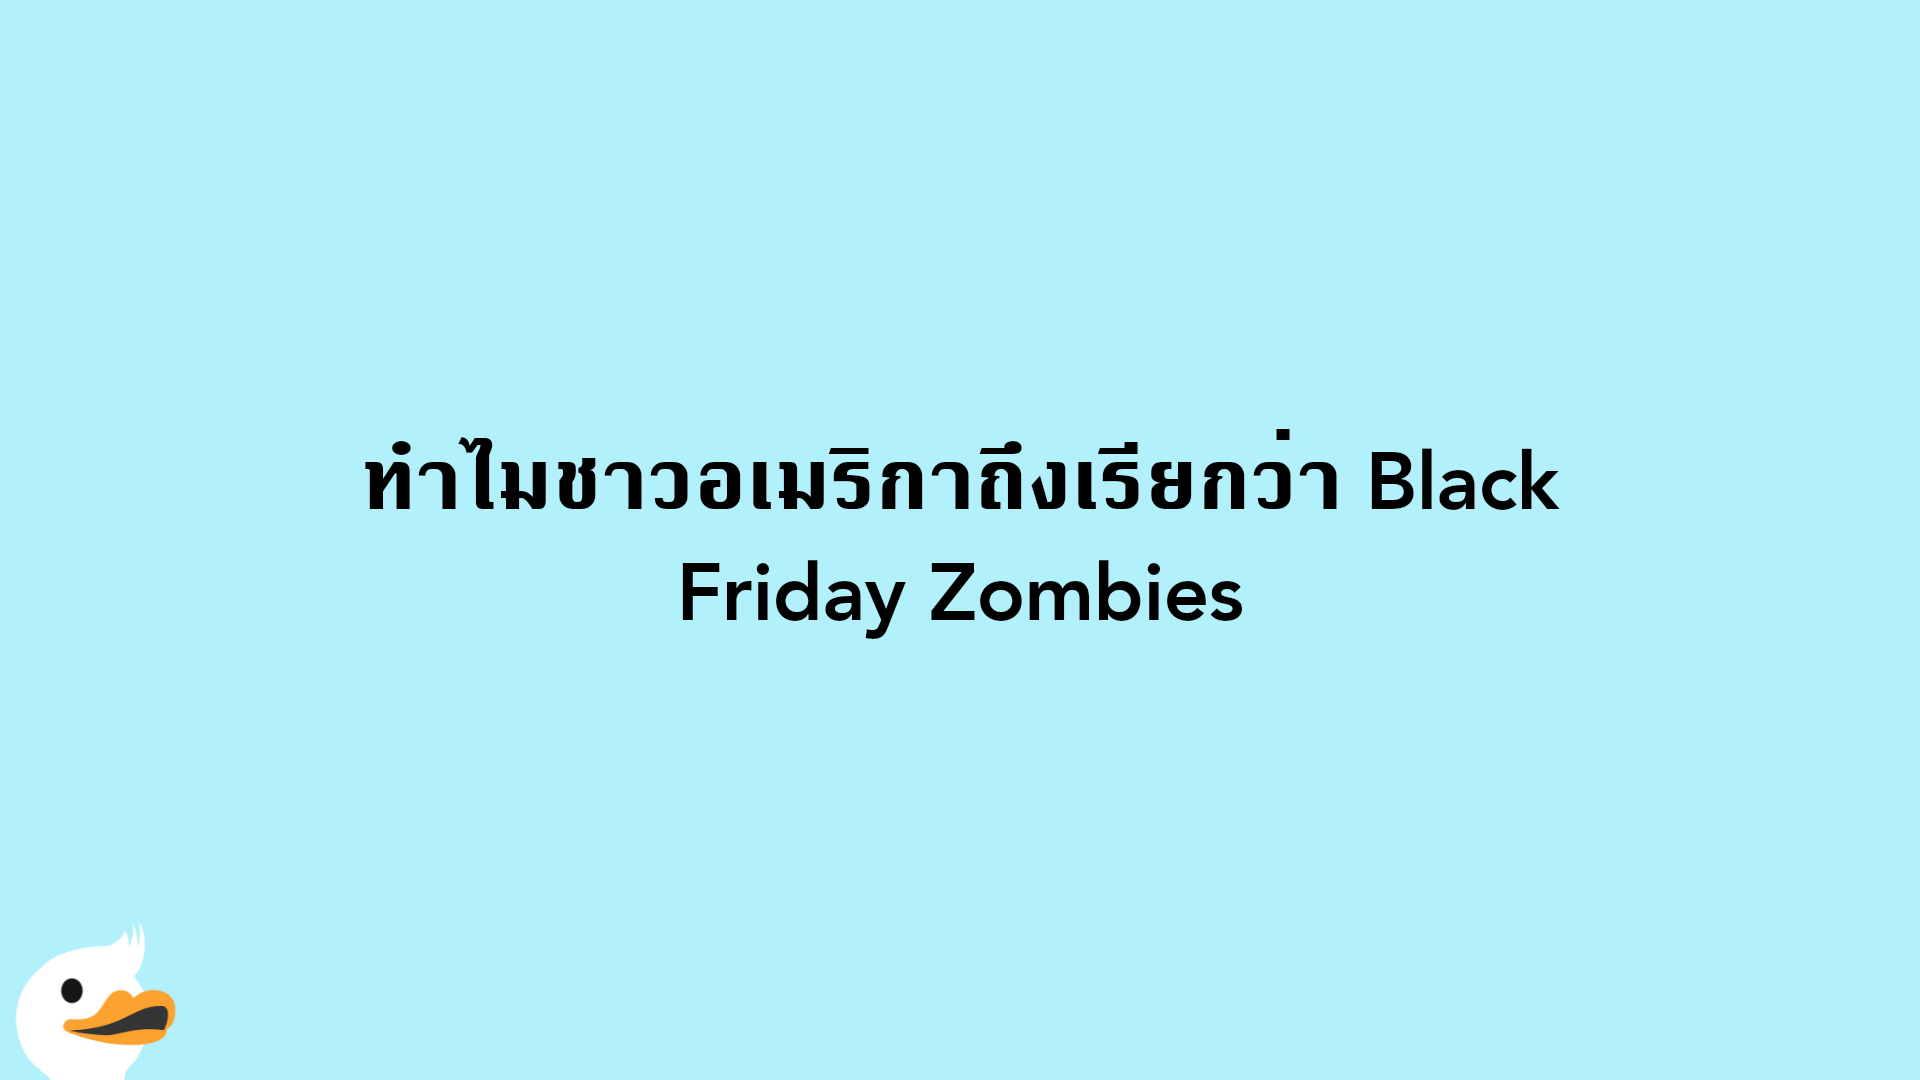 ทำไมชาวอเมริกาถึงเรียกว่า Black Friday Zombies